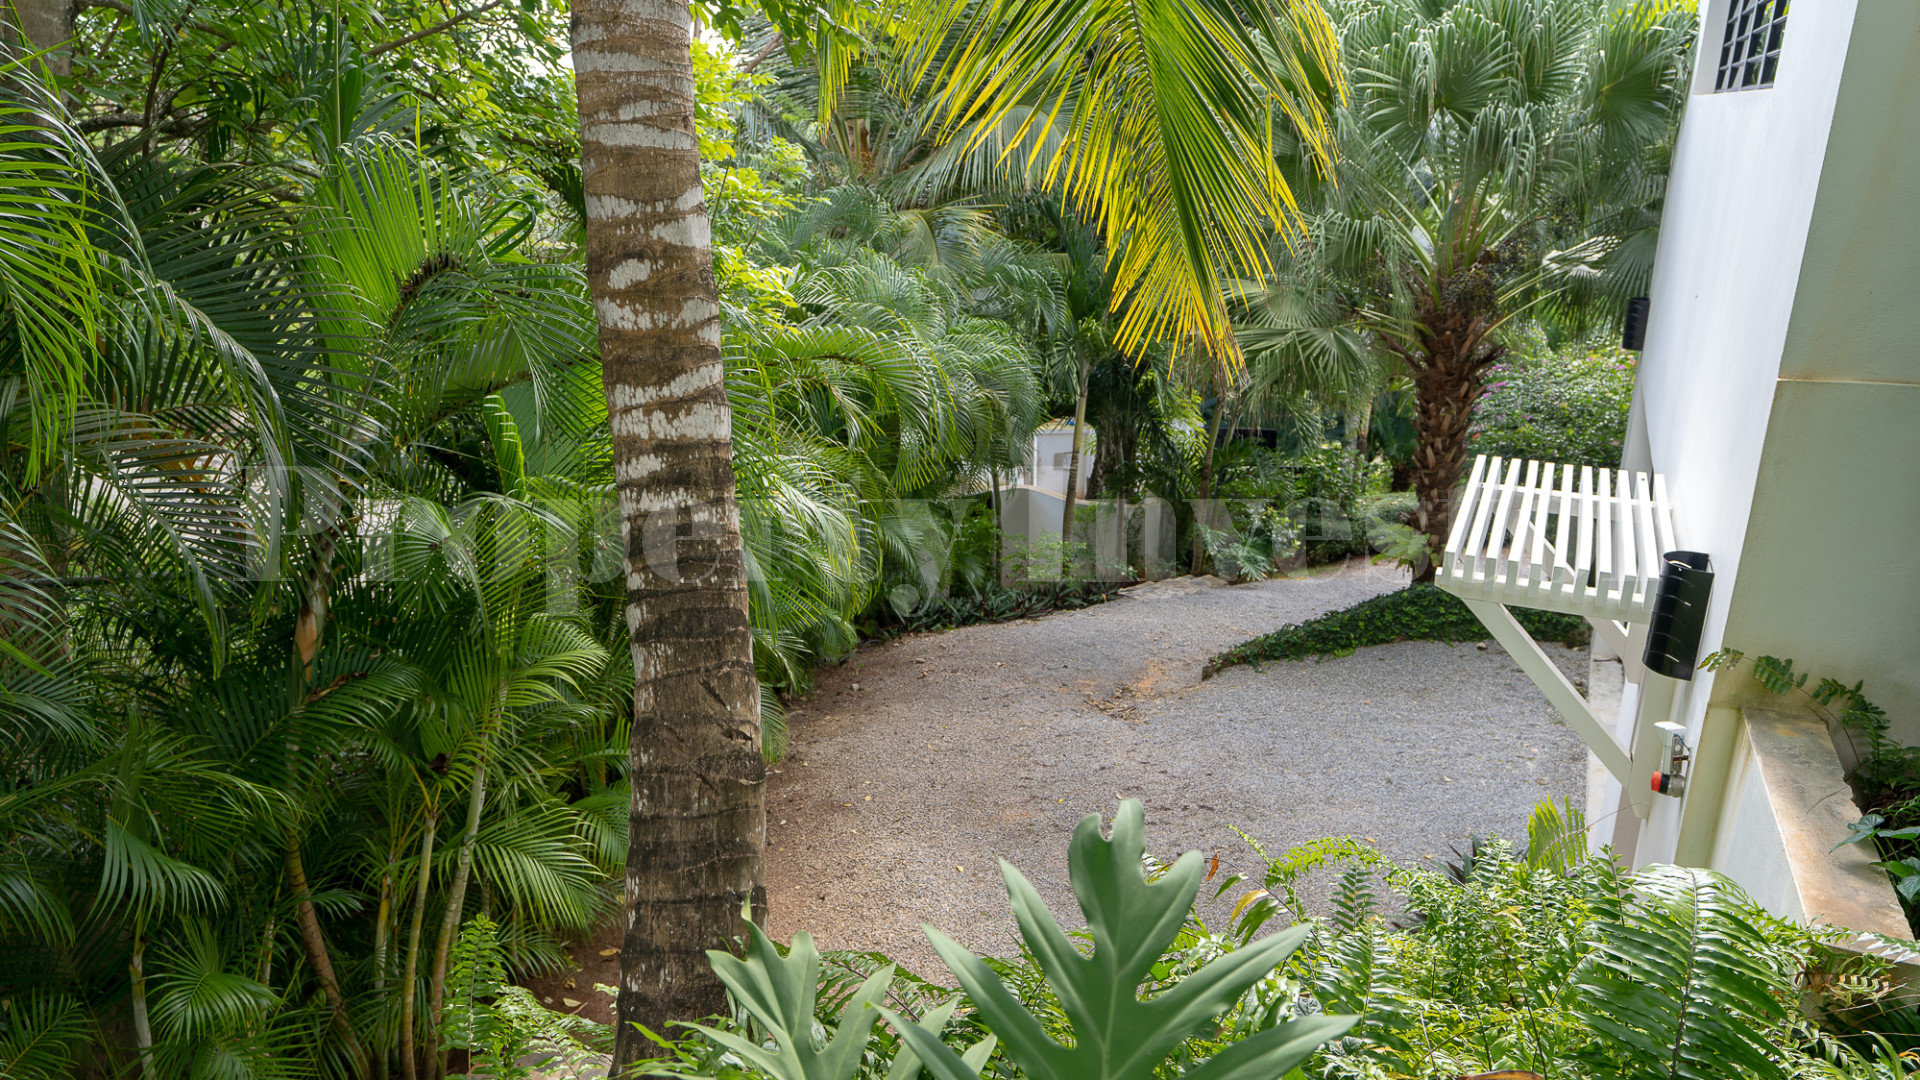 Spectacular Custom Villa Overlooking Las Terrenas & Playa Bonita with Amazing Outdoor Spaces